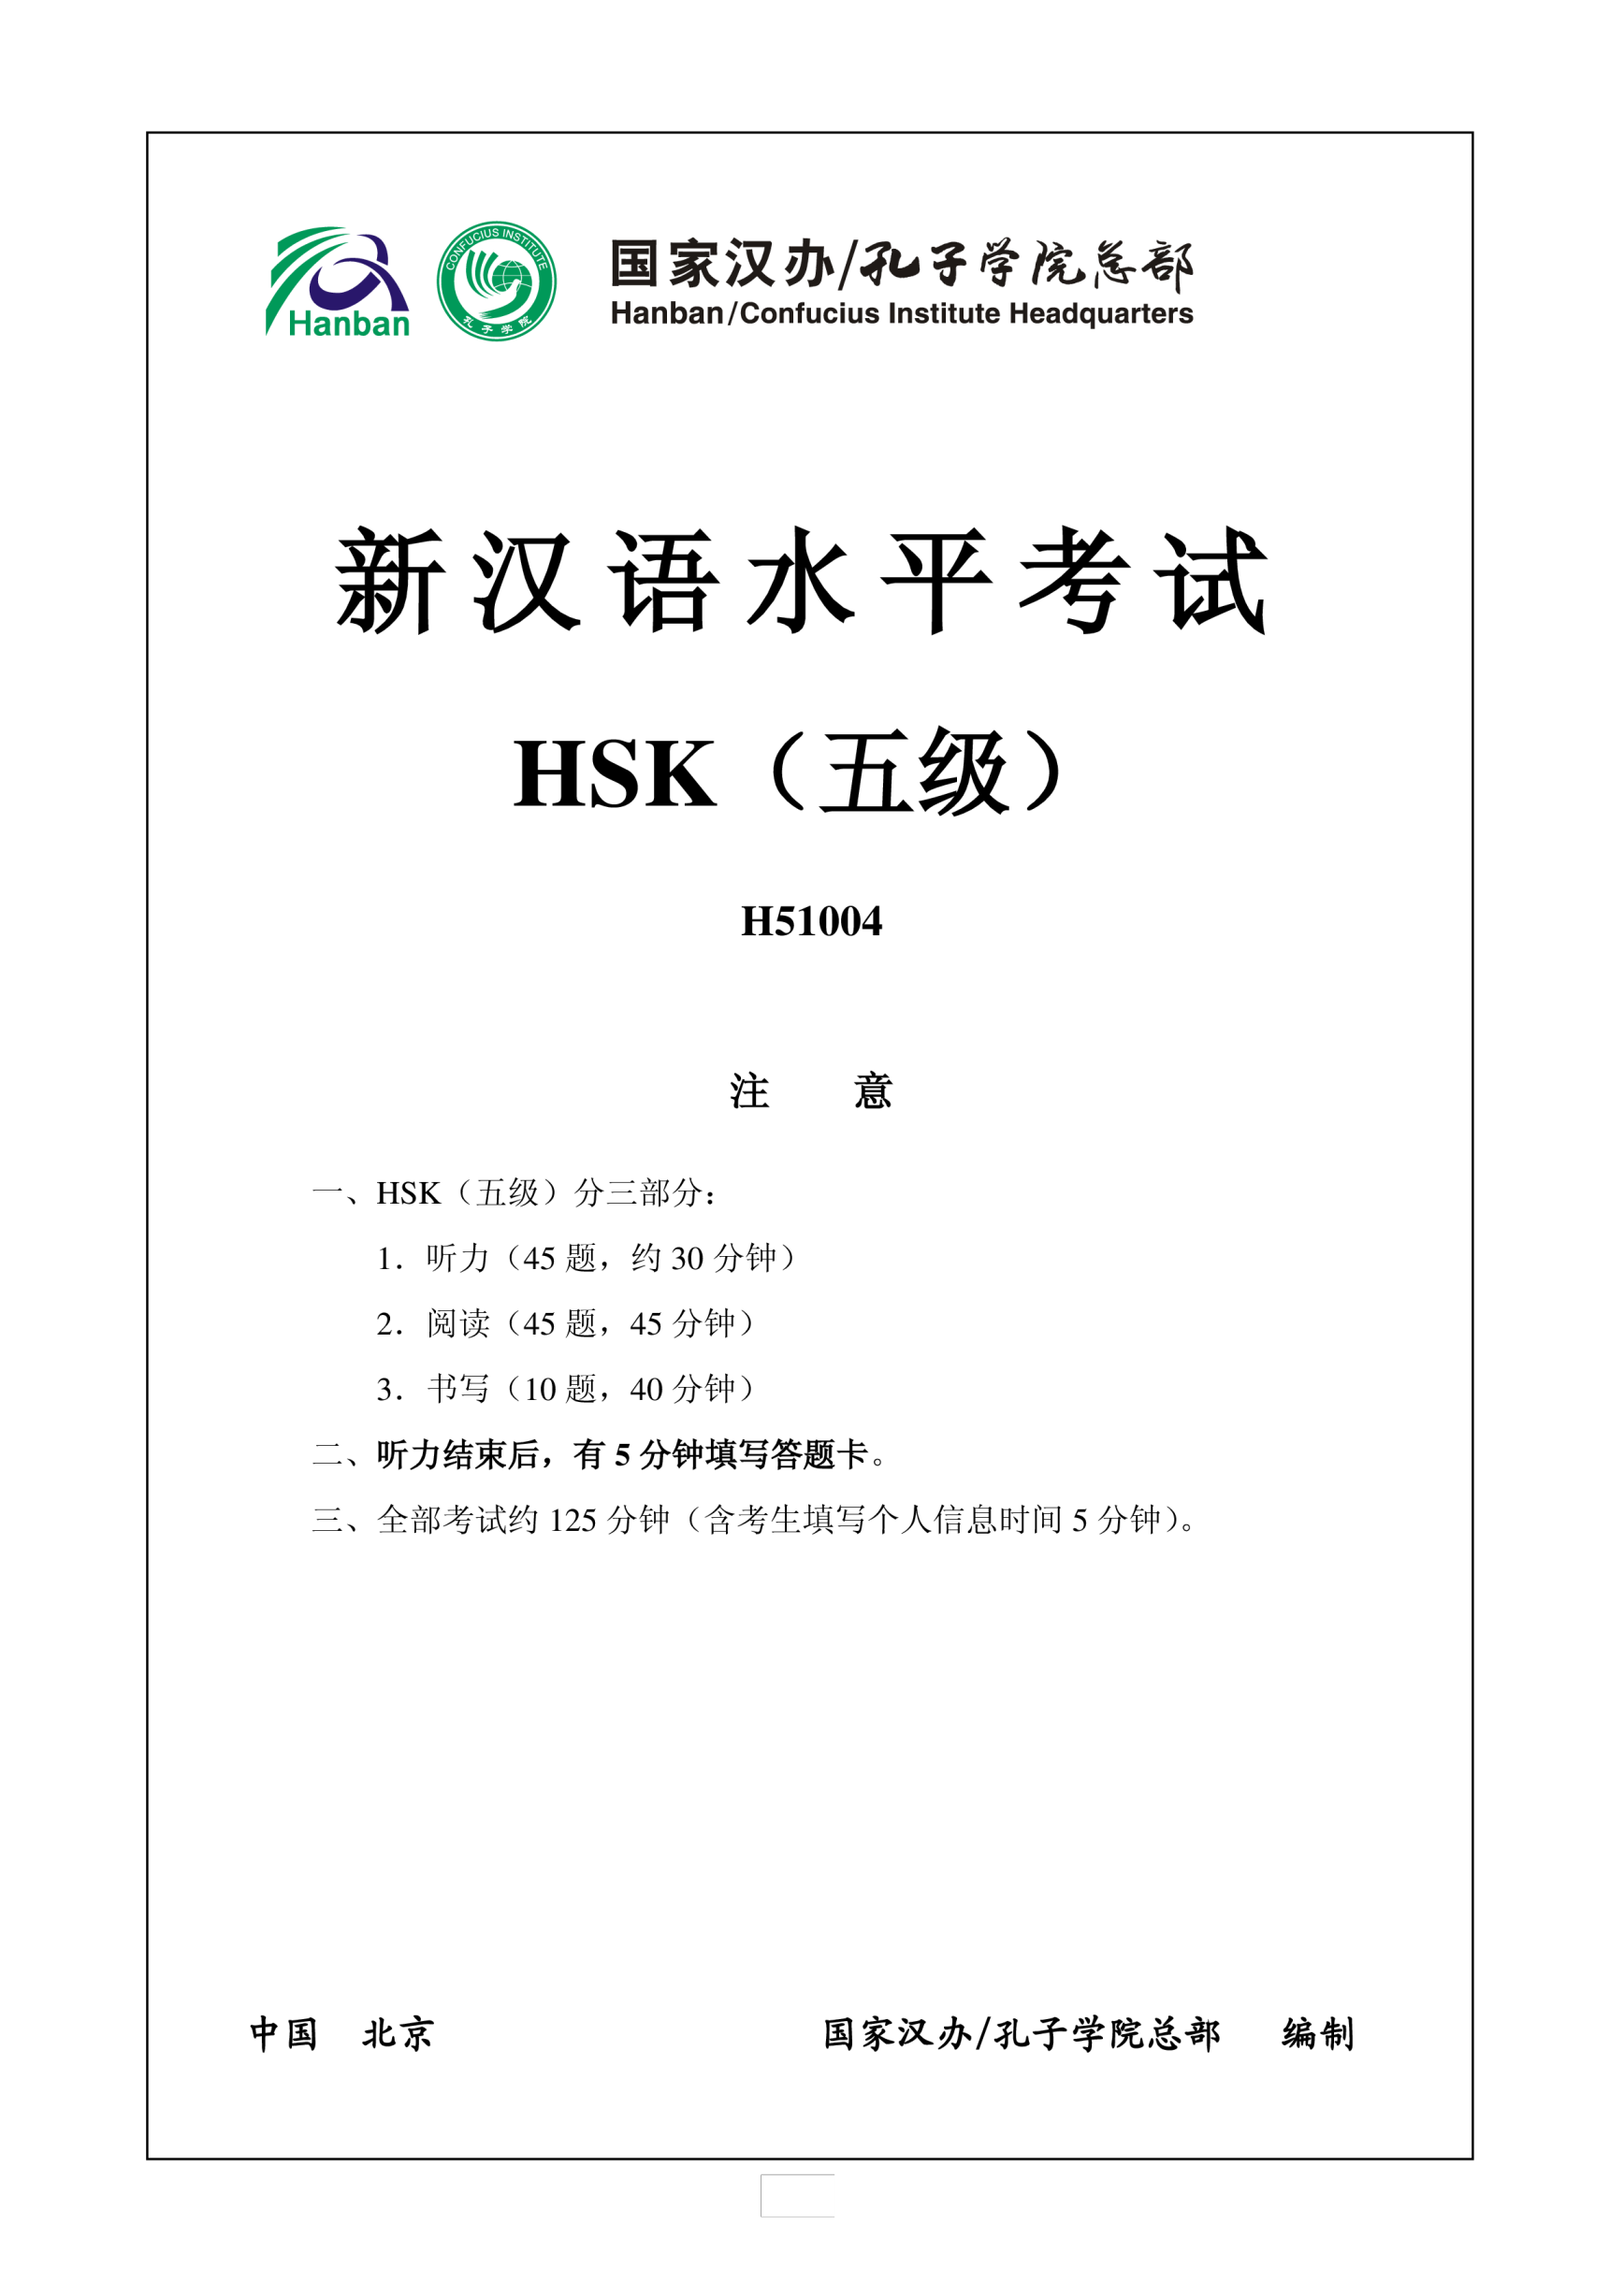 Vorschaubild der VorlageHSK5 H51004 Chinese Exam incl Audio and Answers